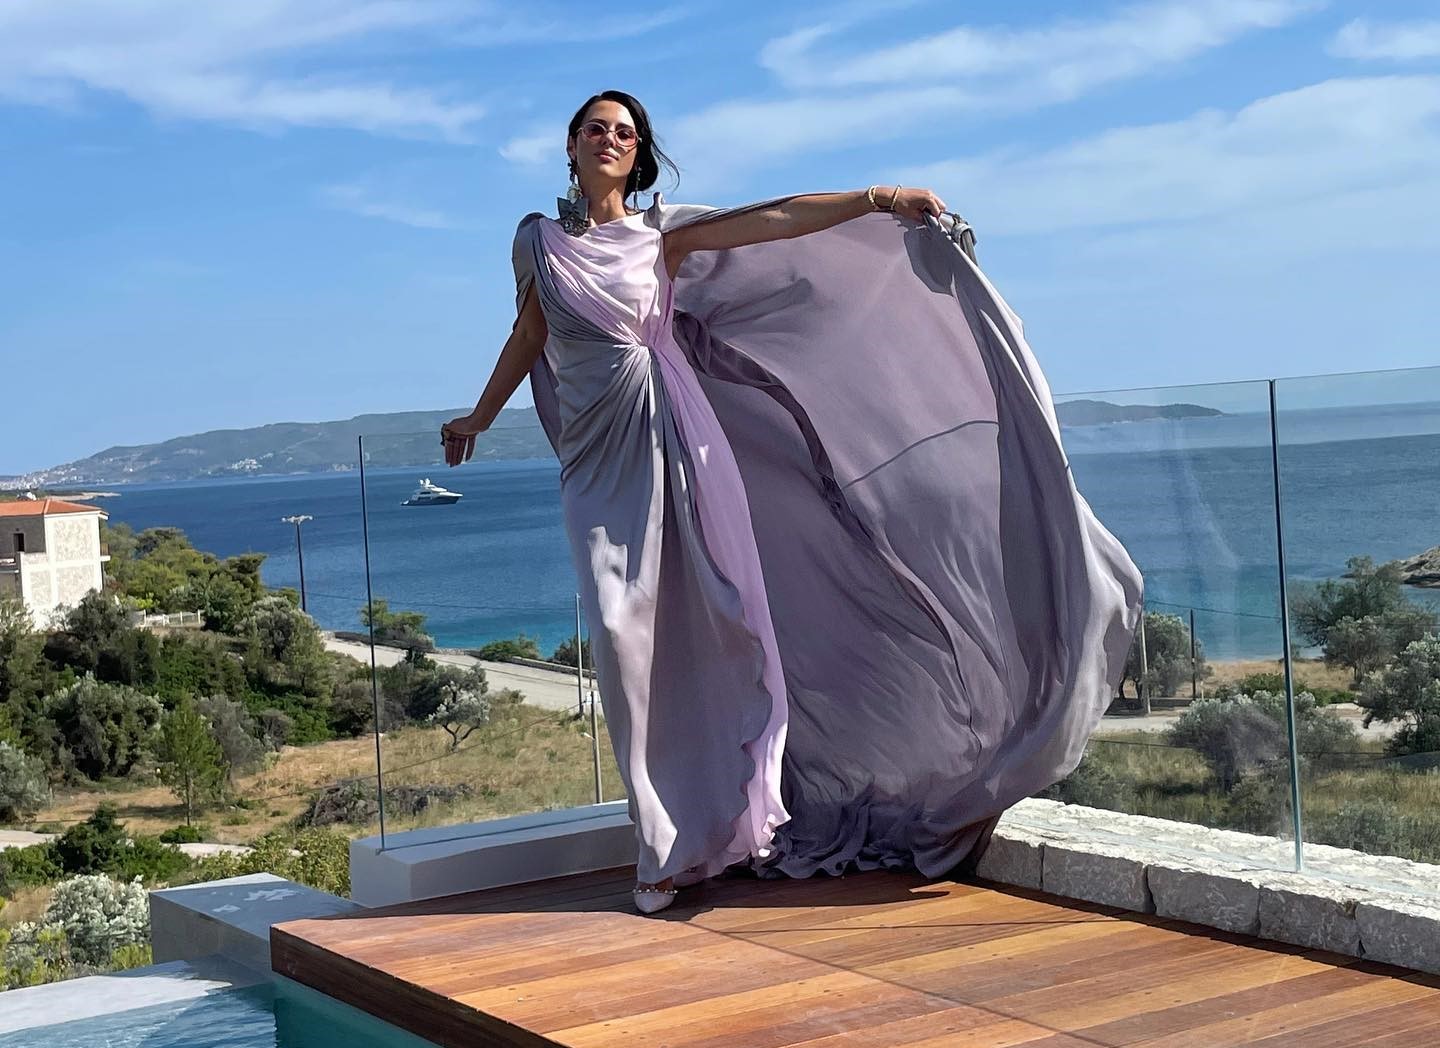 Ραμόνα Βλαντή: «Προτιμώ την Ηλιάνα από την Κωνσταντίνα στην παρουσίαση του My Style Rocks»